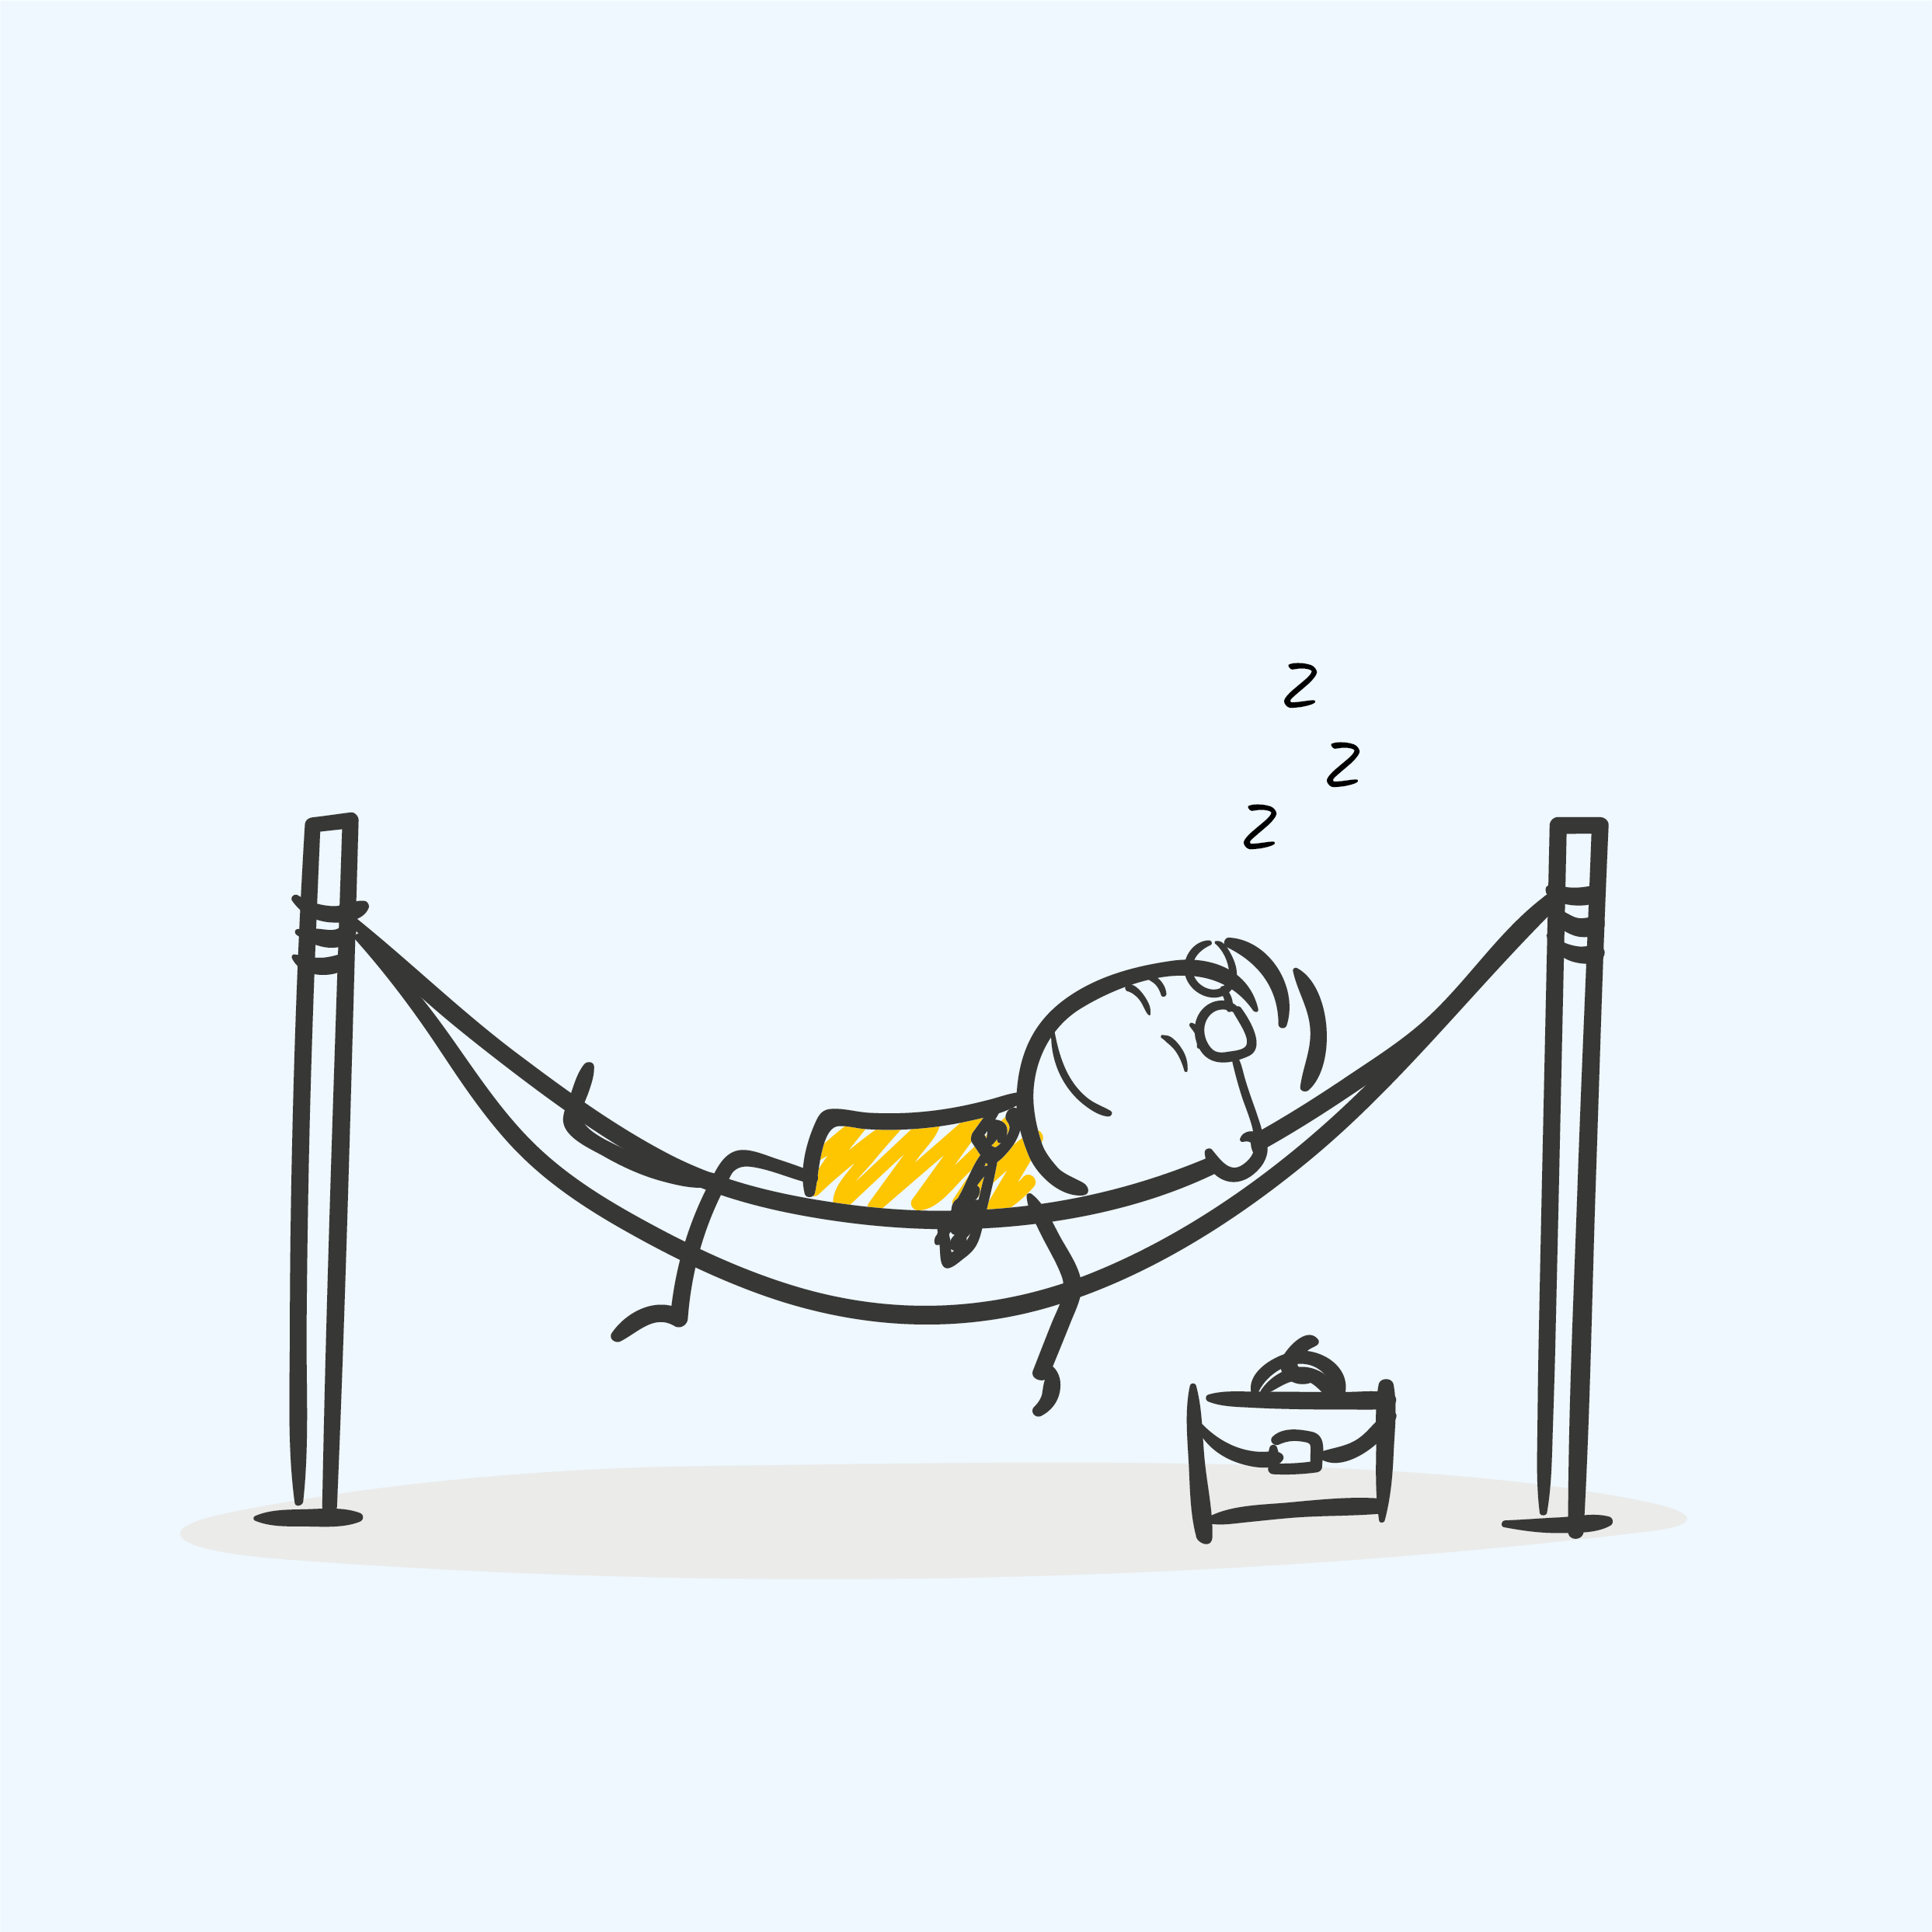 Un personnage dort dans un hamac